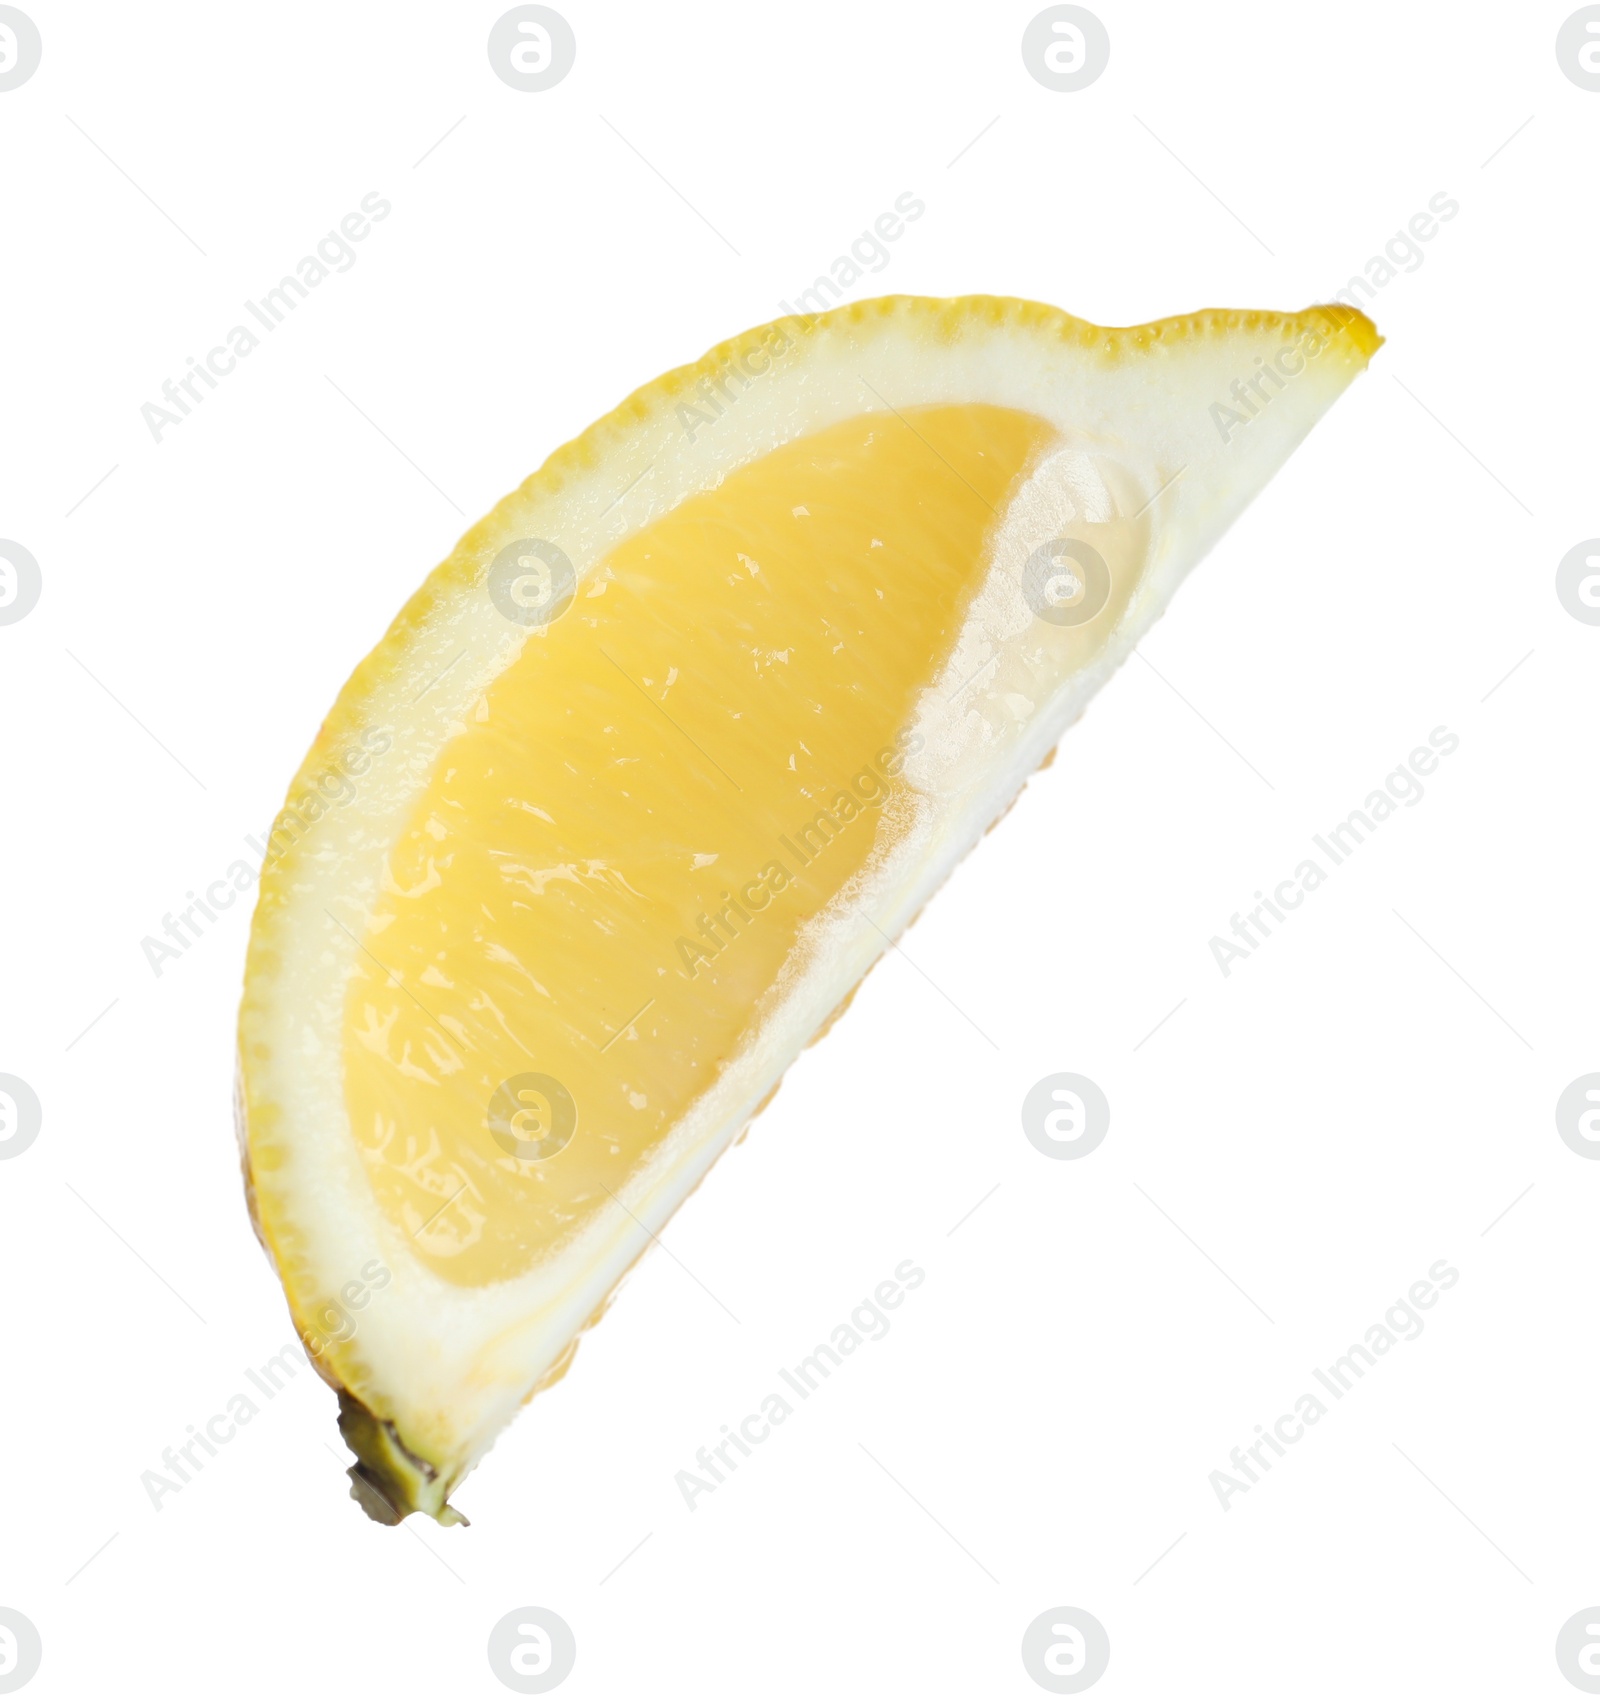 Photo of Piece of fresh lemon isolated on white